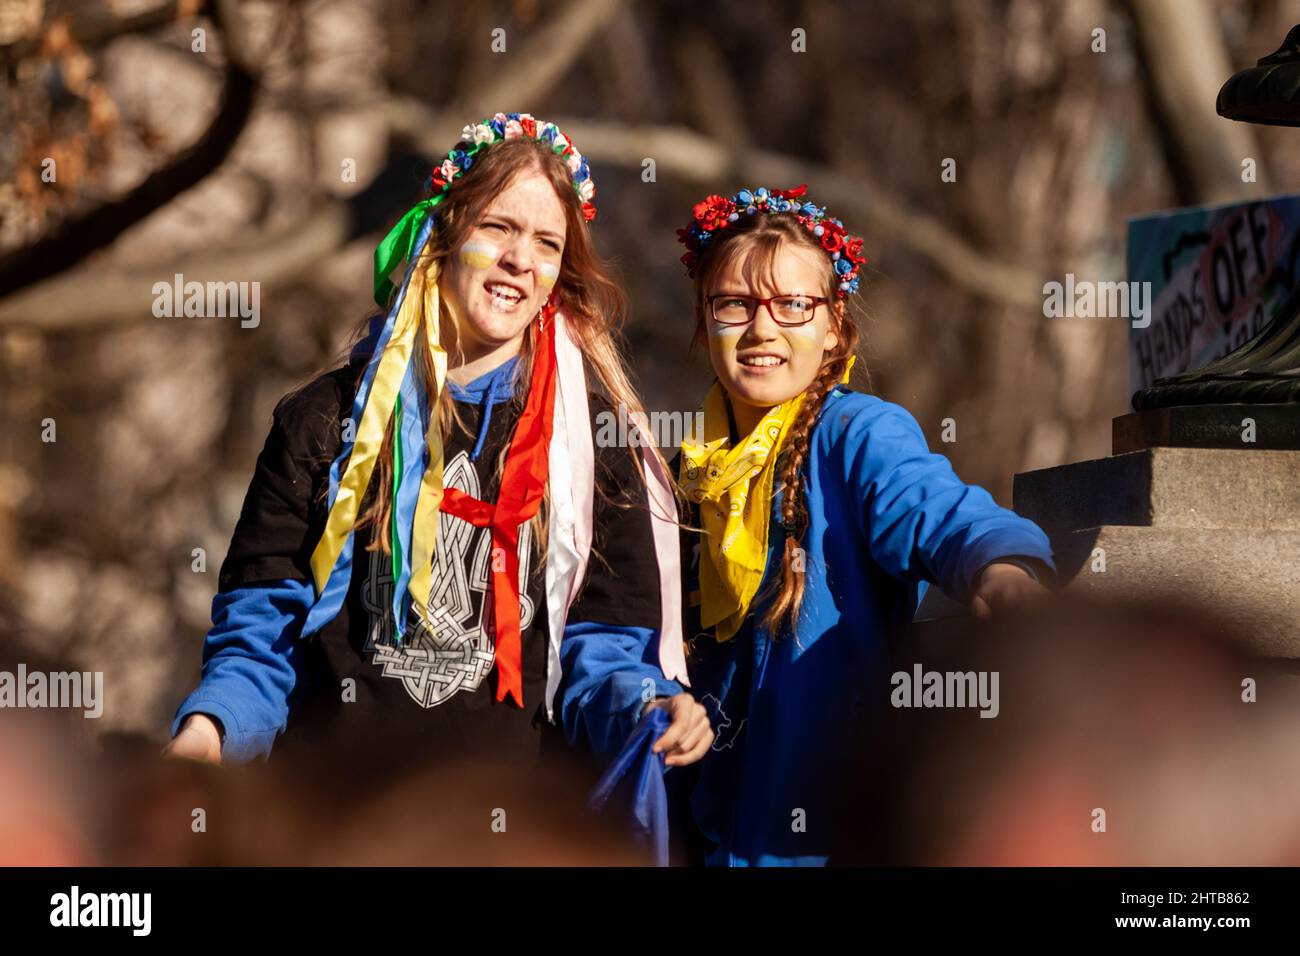 Washington, DC, États-Unis, 27 février 2021. Photo : les manifestants portent des fleurs et des rubans dans leurs cheveux lors d'un rassemblement pour l'Ukraine à la Maison Blanche. Des milliers de personnes de partout aux États-Unis se sont rassemblées pour remercier les États-Unis et d'autres pays pour leur aide, et pour exiger une zone d'exclusion aérienne et d'autres aides pour l'Ukraine. L'événement a été parrainé par United Help Ukraine et des militants ukrainiens américains, des organisations d'assistance et de défense des droits basées aux États-Unis. Crédit : Allison Bailey / Alamy Live News Banque D'Images